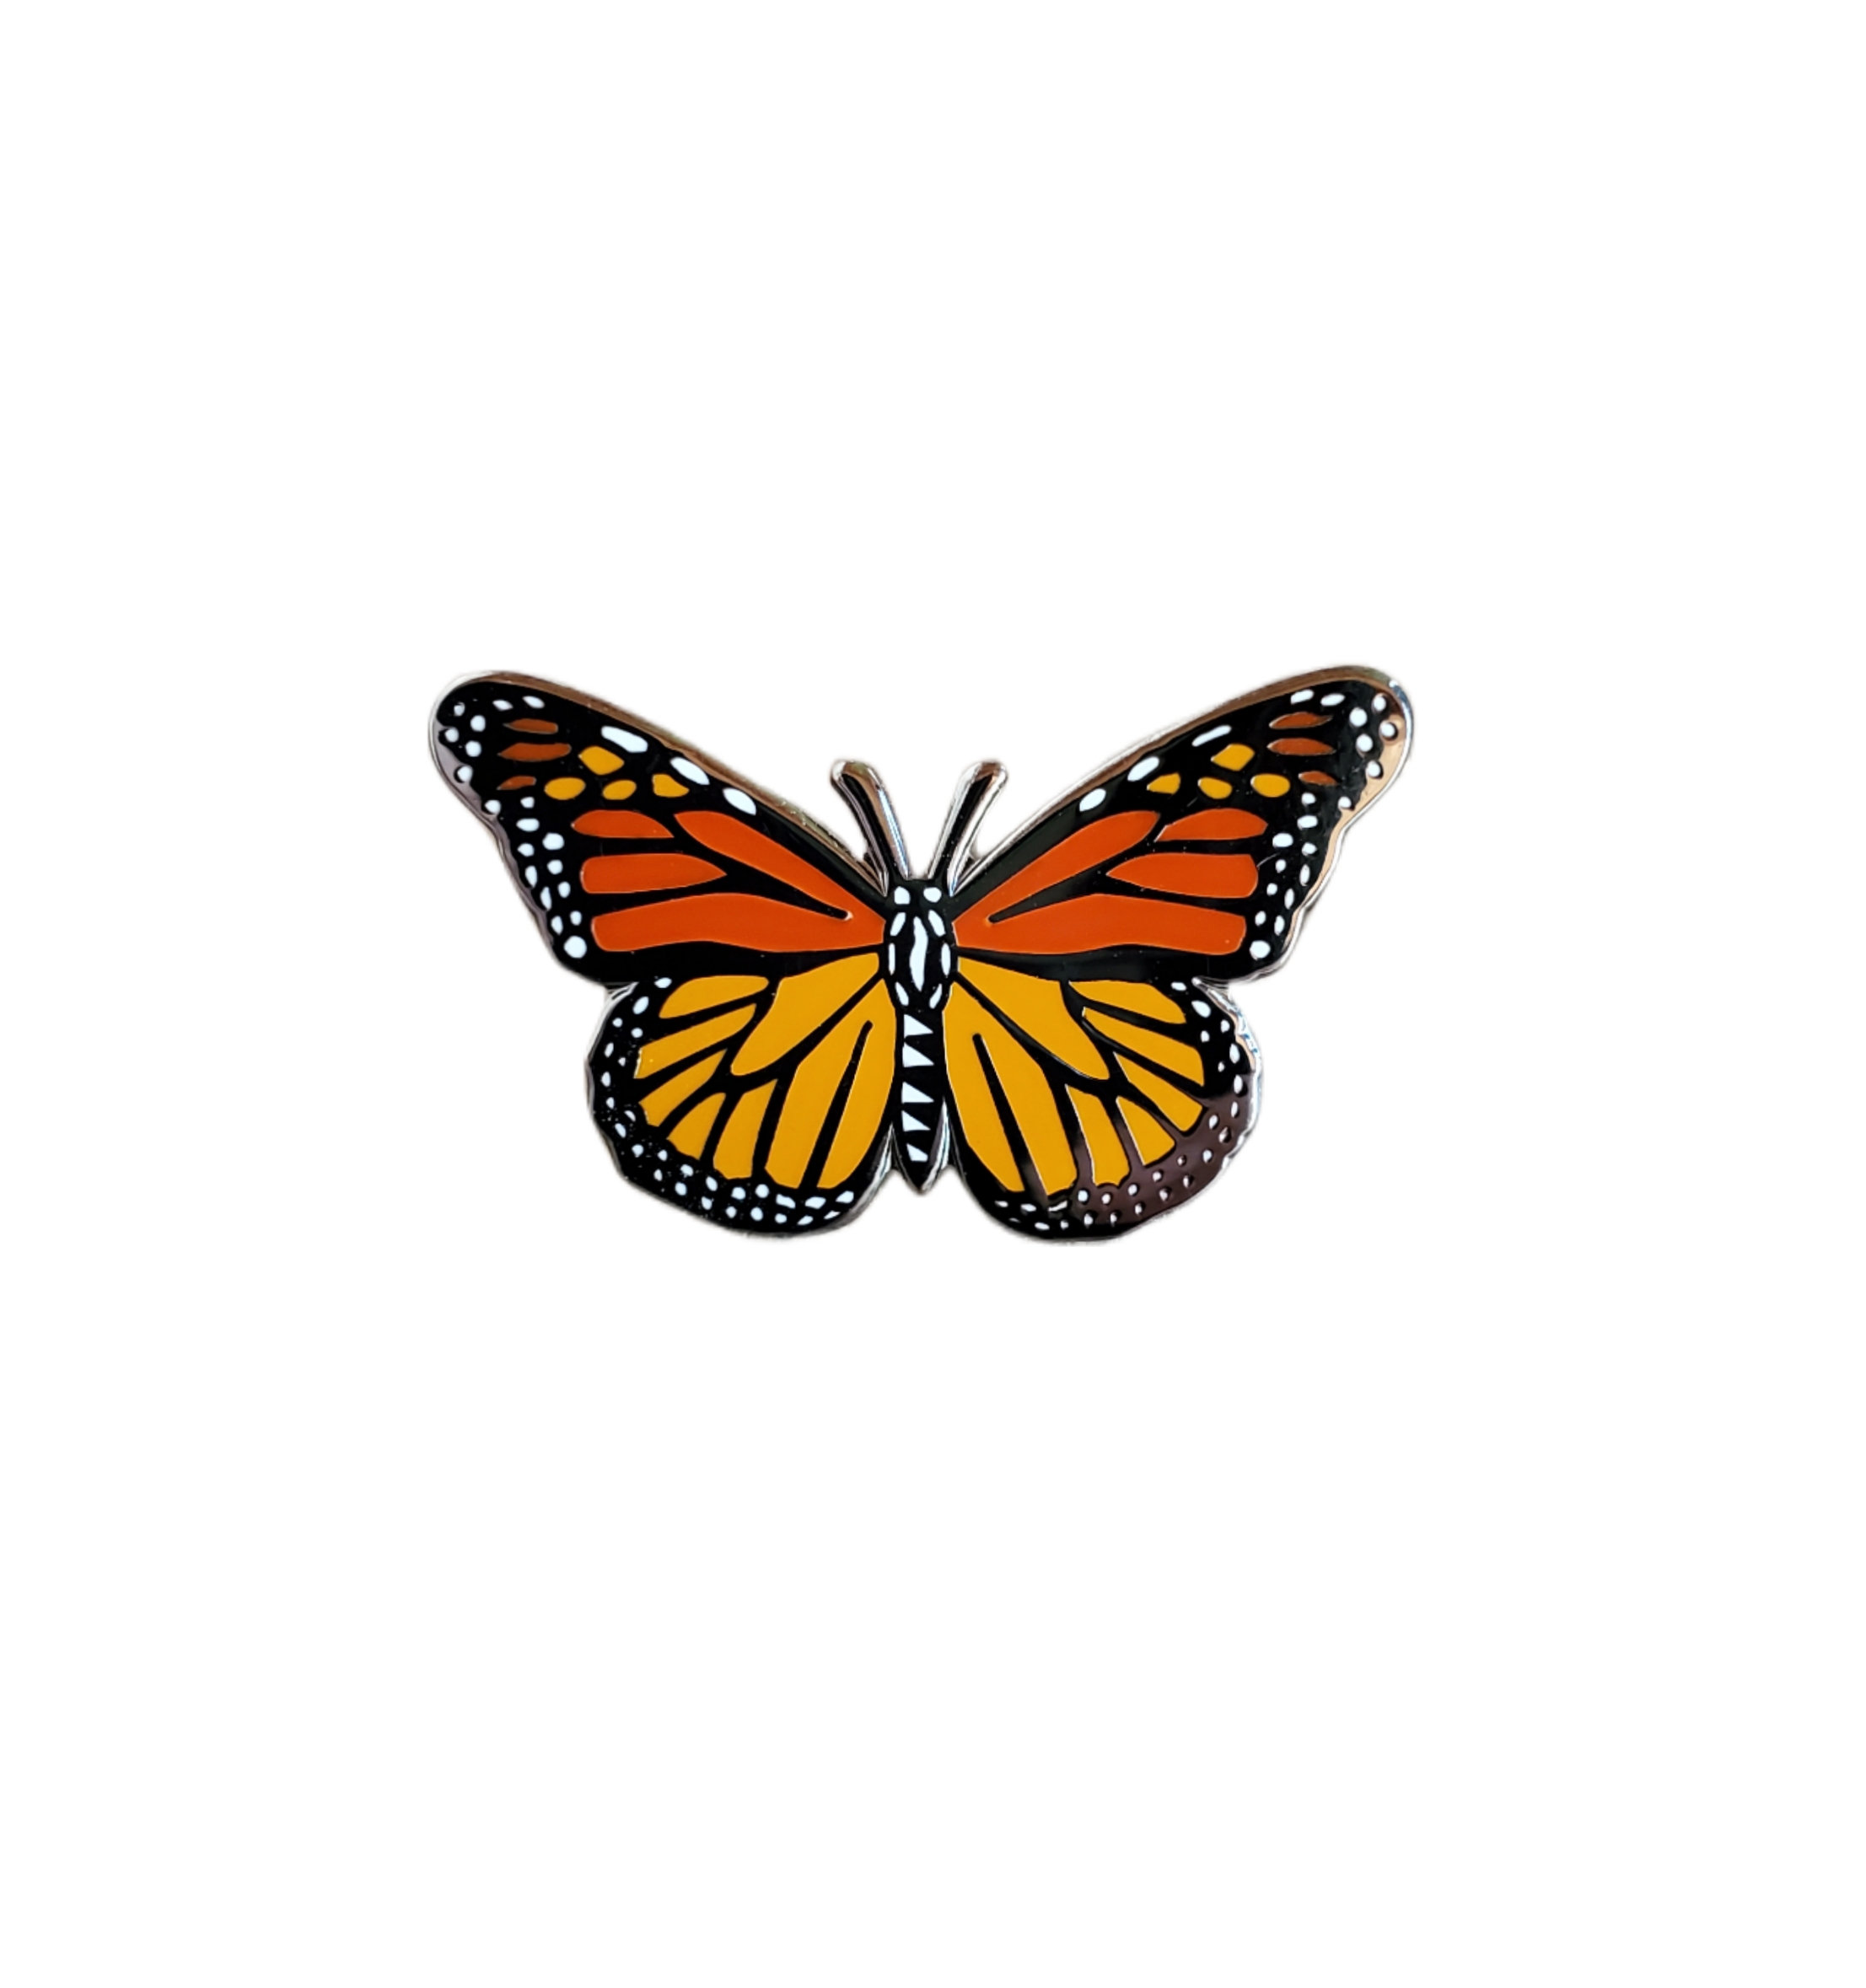  Gyn&Joy Womens Clear Crystal Rhinestone Butterfly